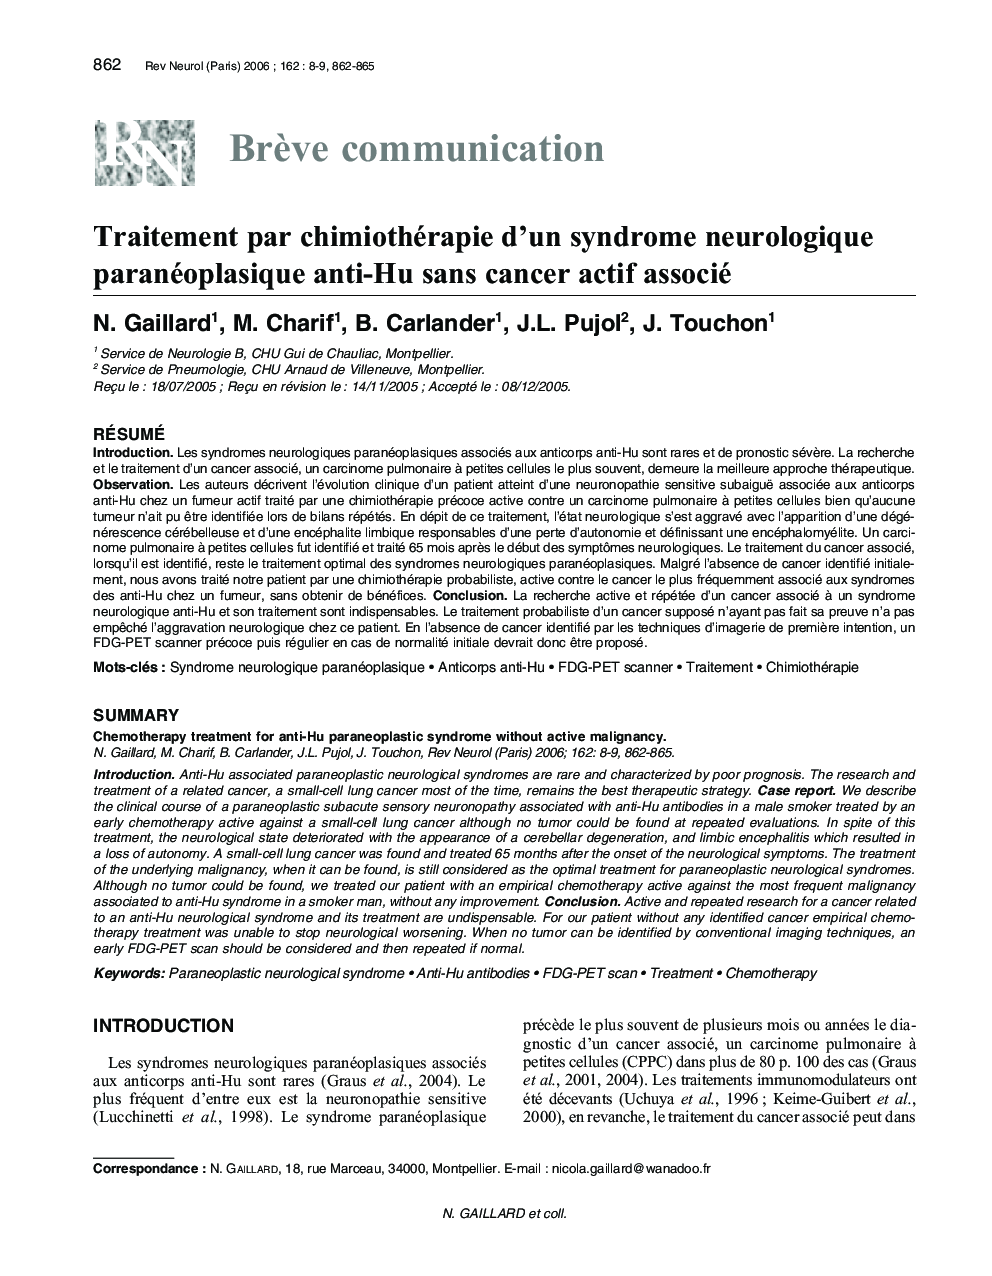 Traitement par chimiothérapie d'un syndrome neurologique paranéoplasique anti-Hu sans cancer actif associé